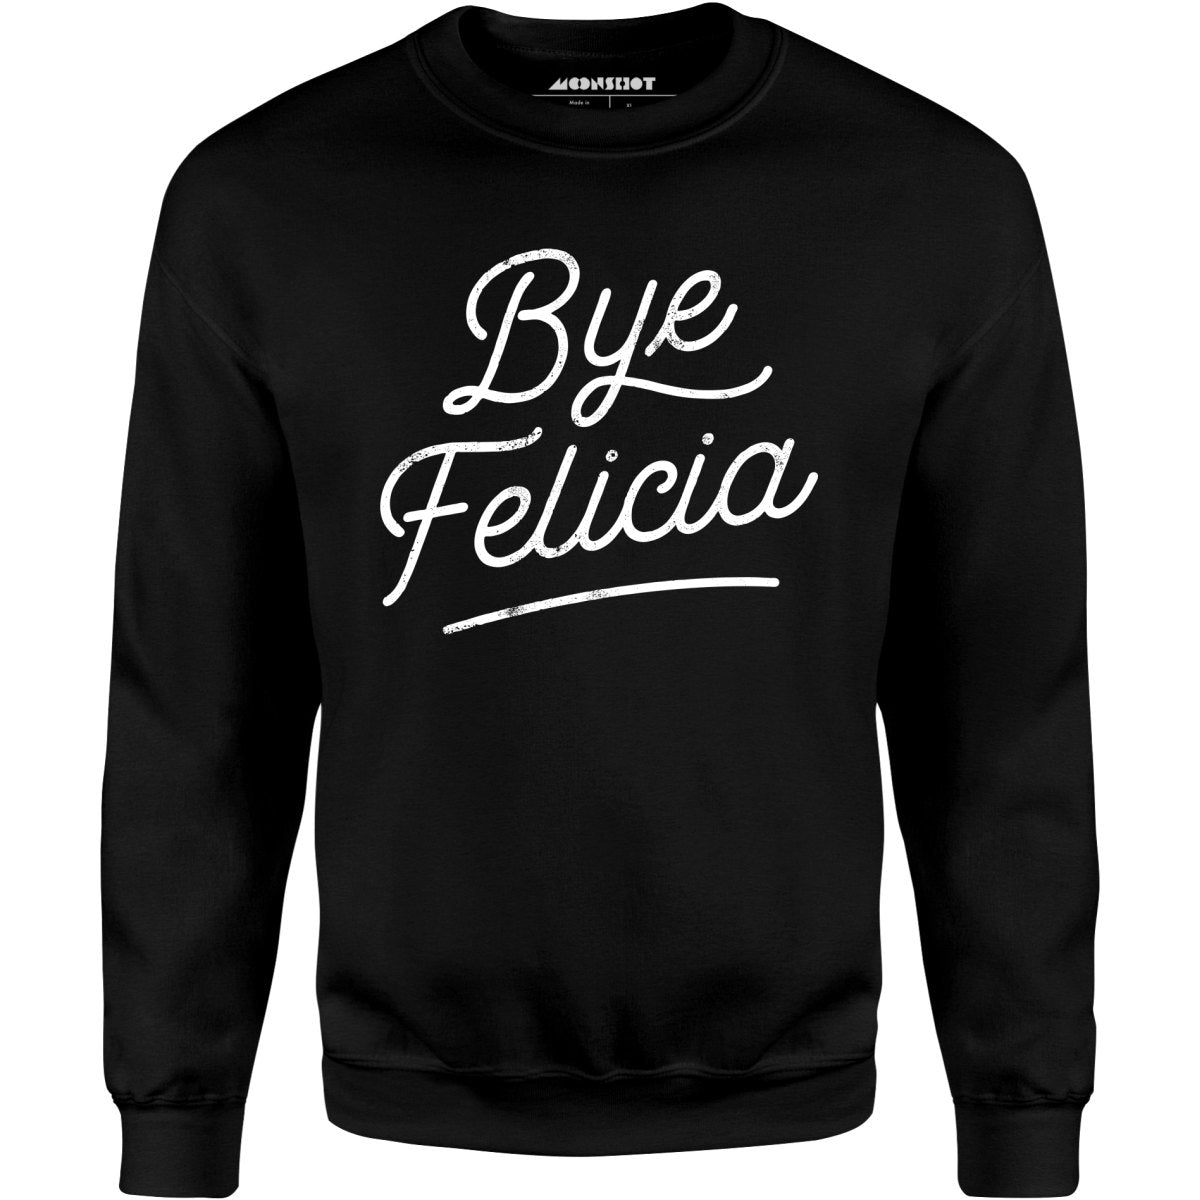 Bye Felicia - Unisex Sweatshirt